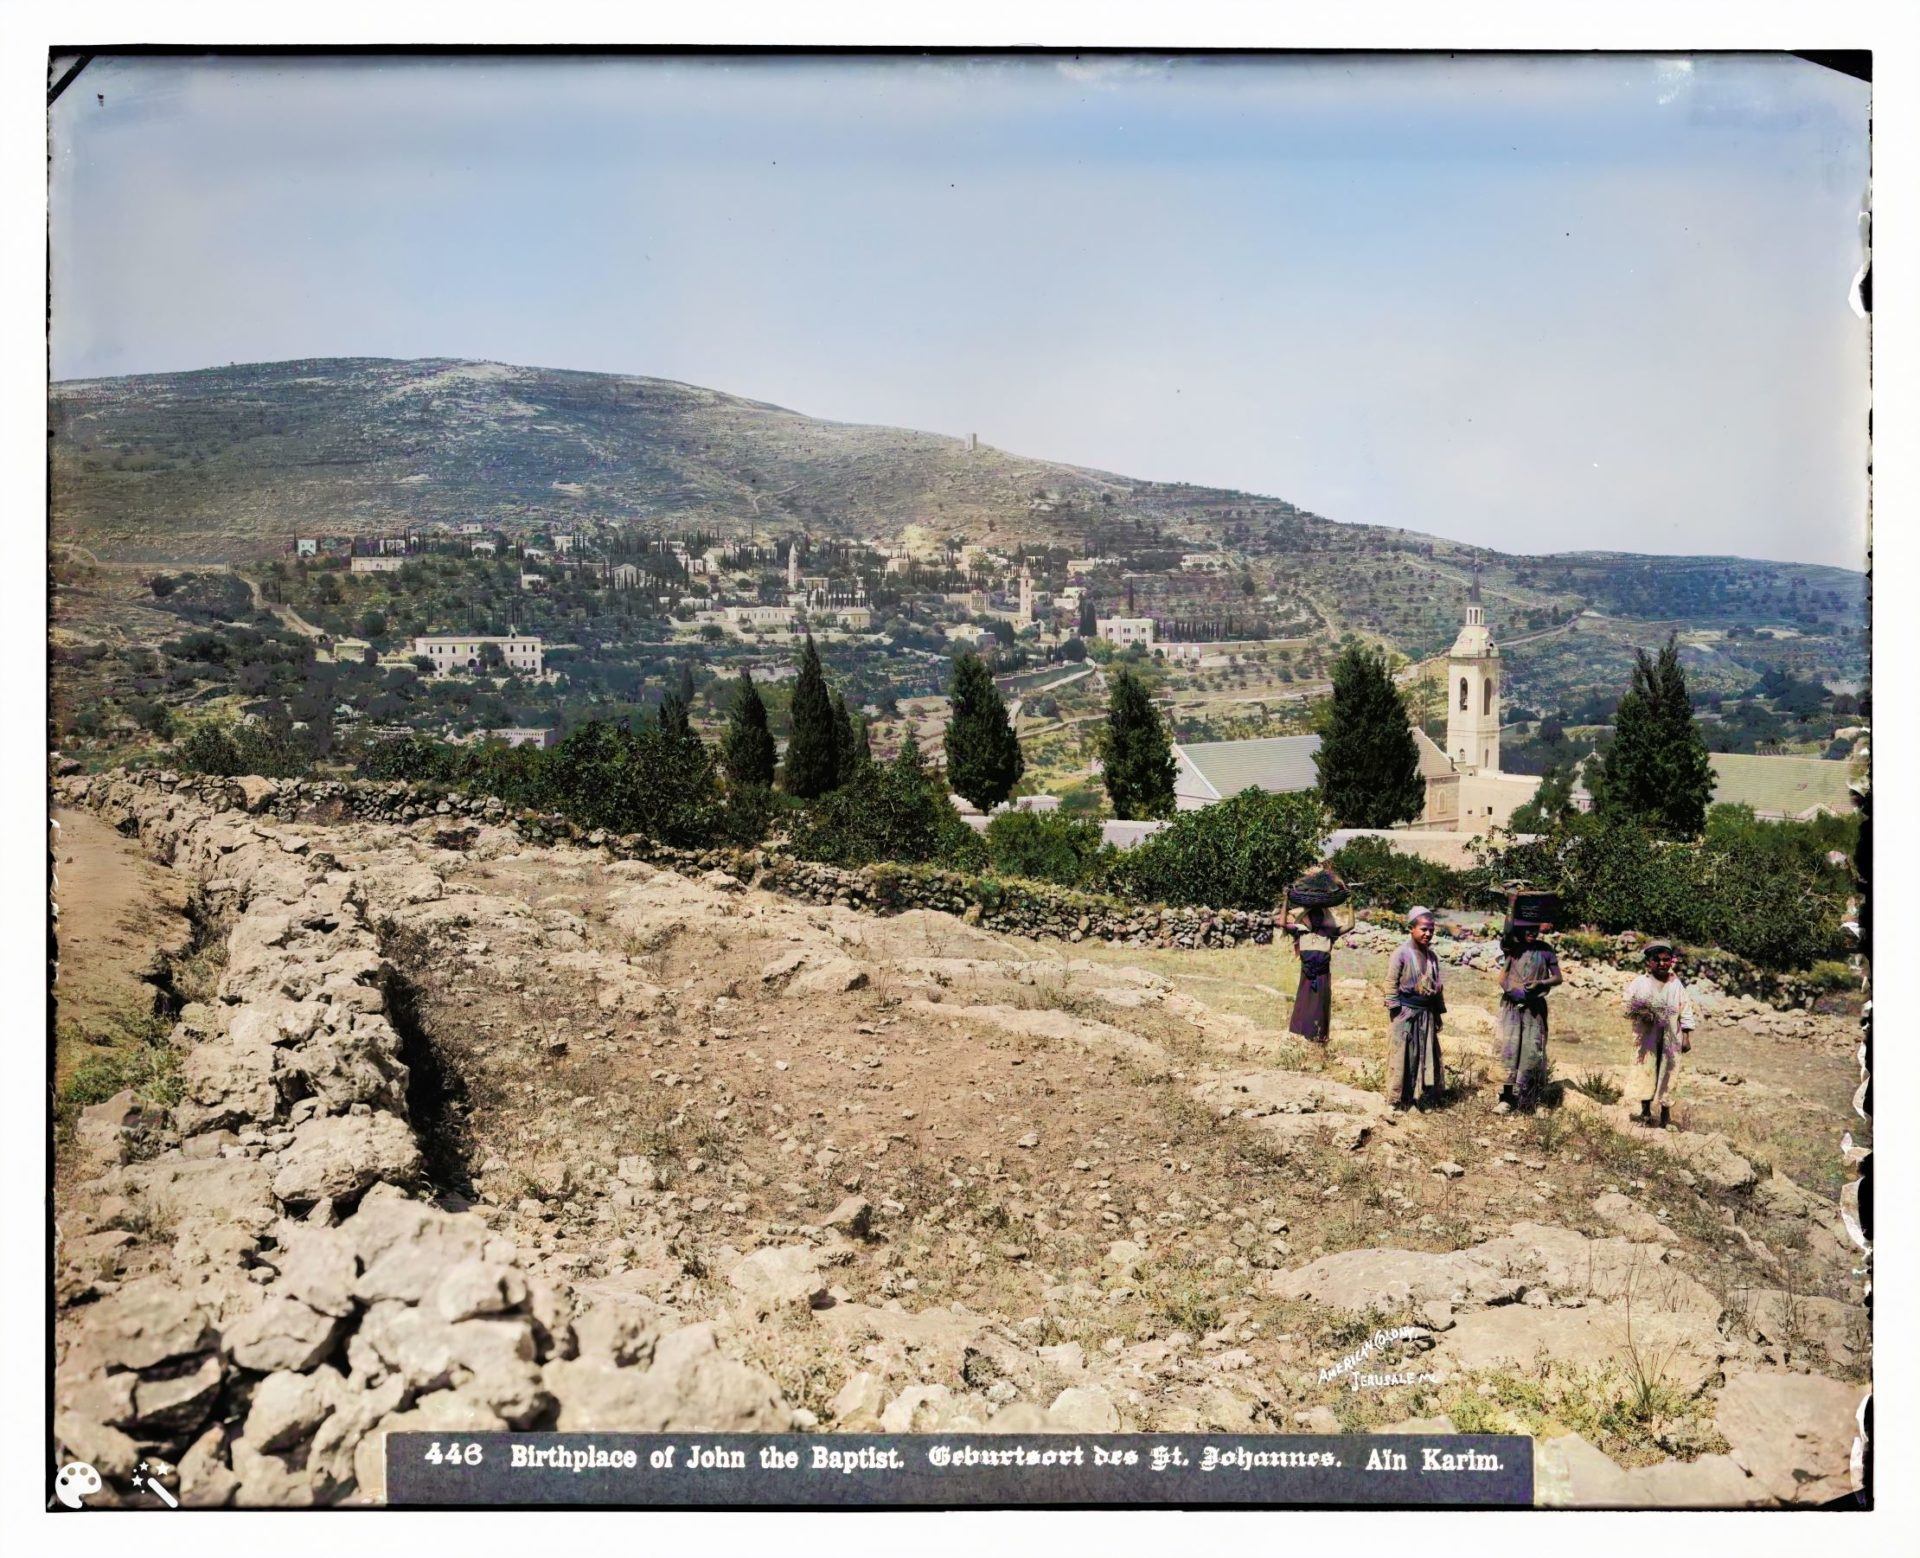 עין כרם, ירושלים, תחילת המאה ה-20. מספר תמונה: LC-DIG-matpc-06751